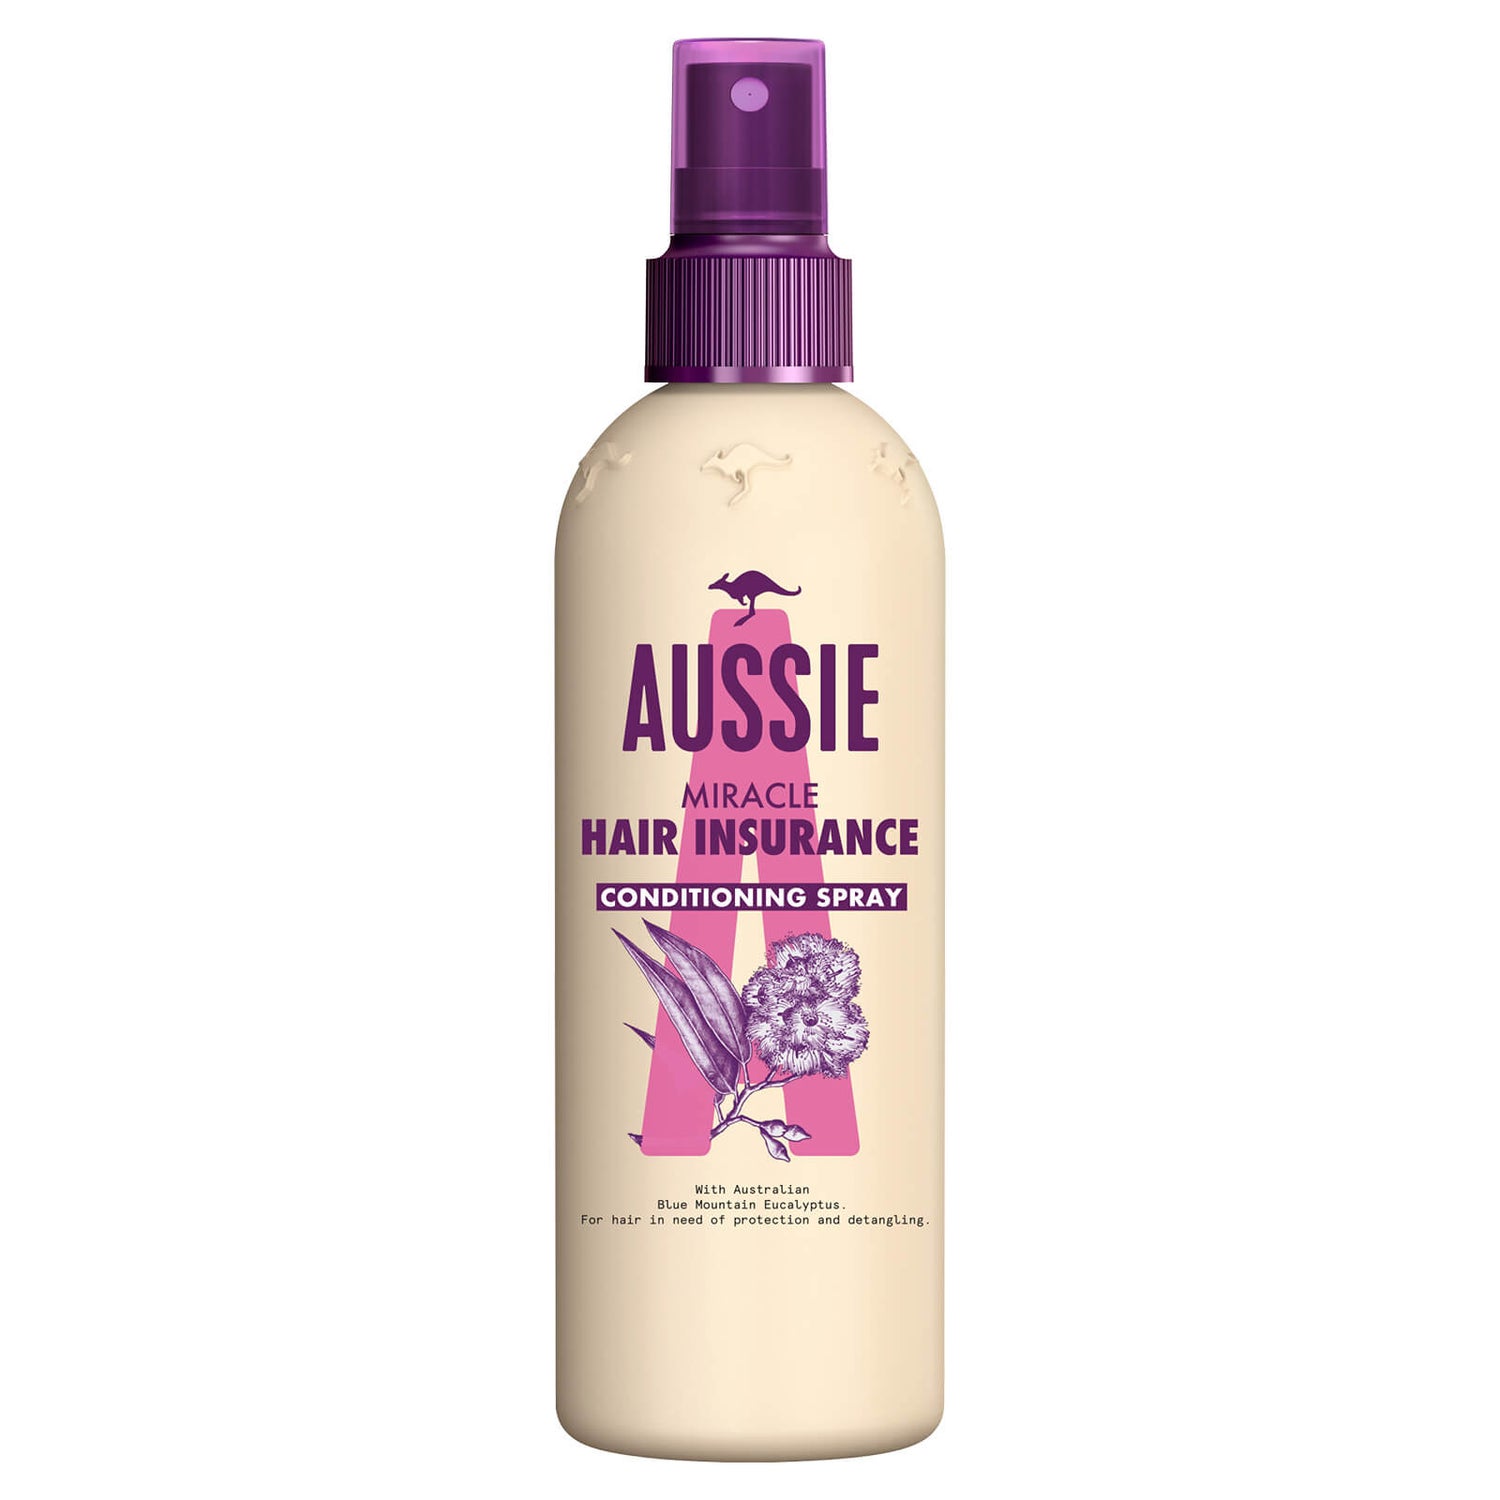 Aussie Hair Insurance Leave-in Hair Conditioner Spray 250ml